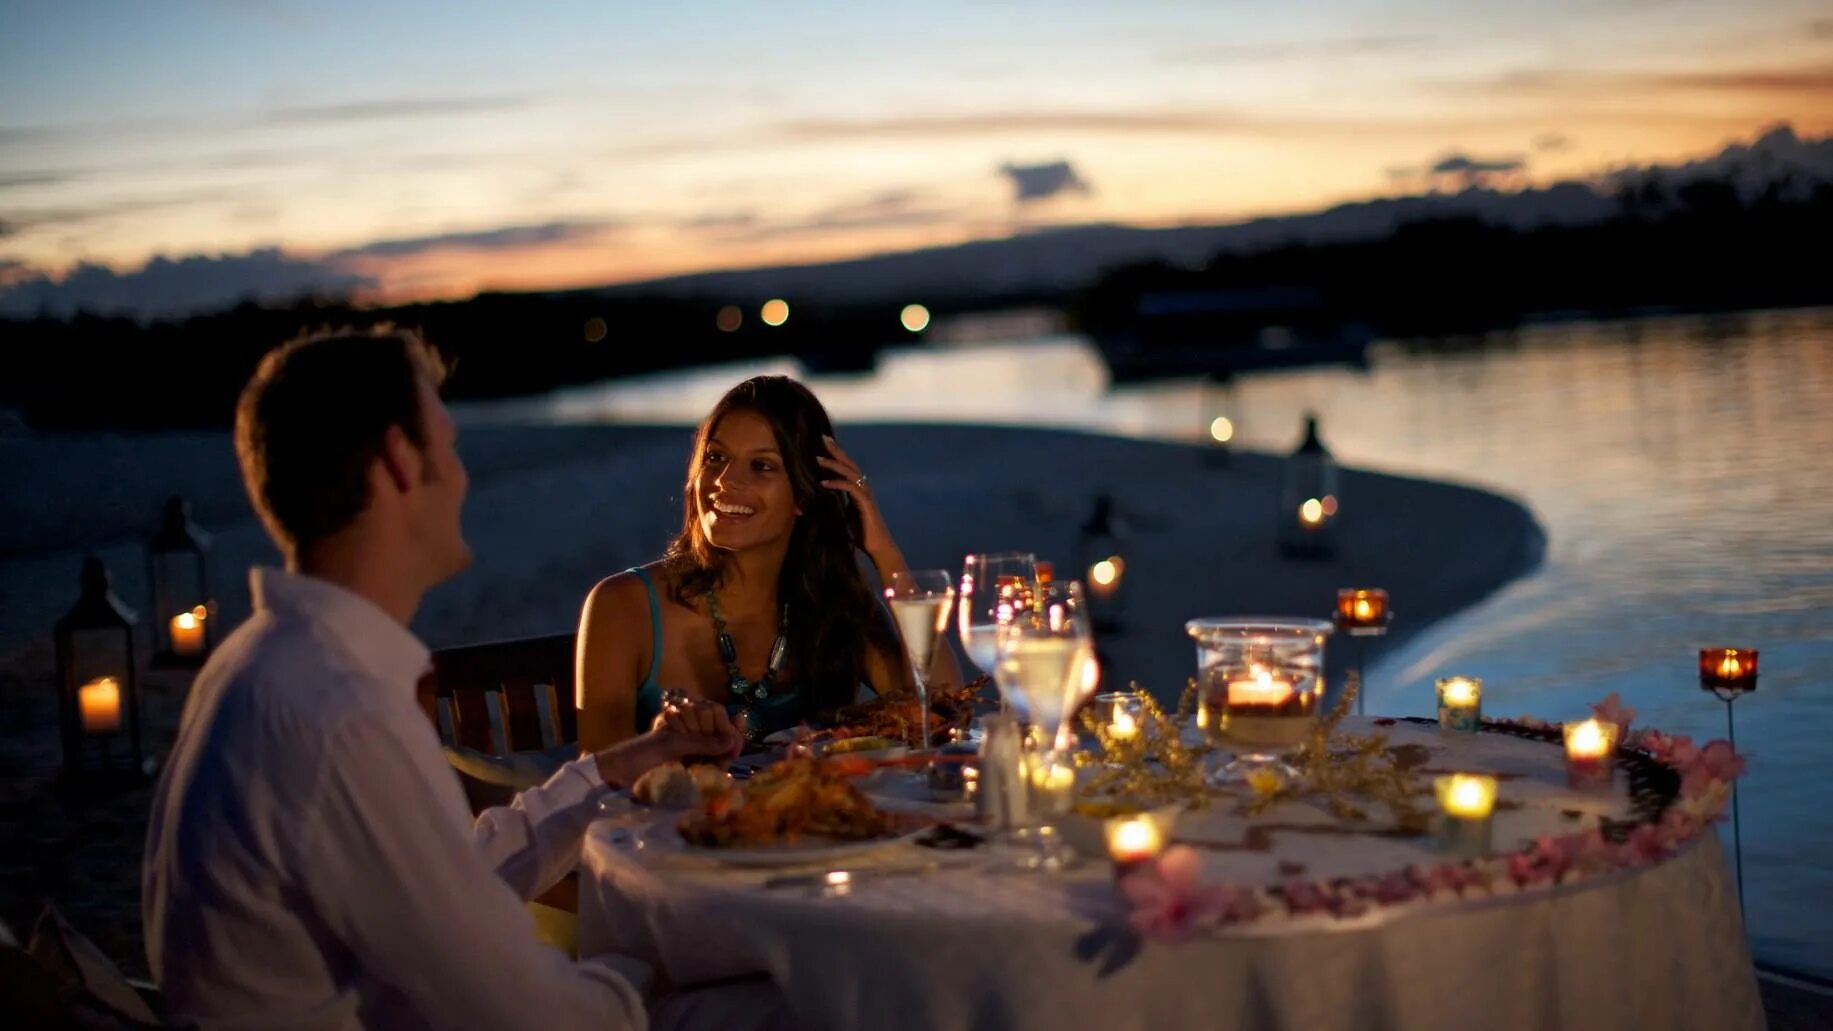 Более романтично. Романтический ужин. Романтический вечер. Романтический ужин при свечах. Ужин на берегу реки.